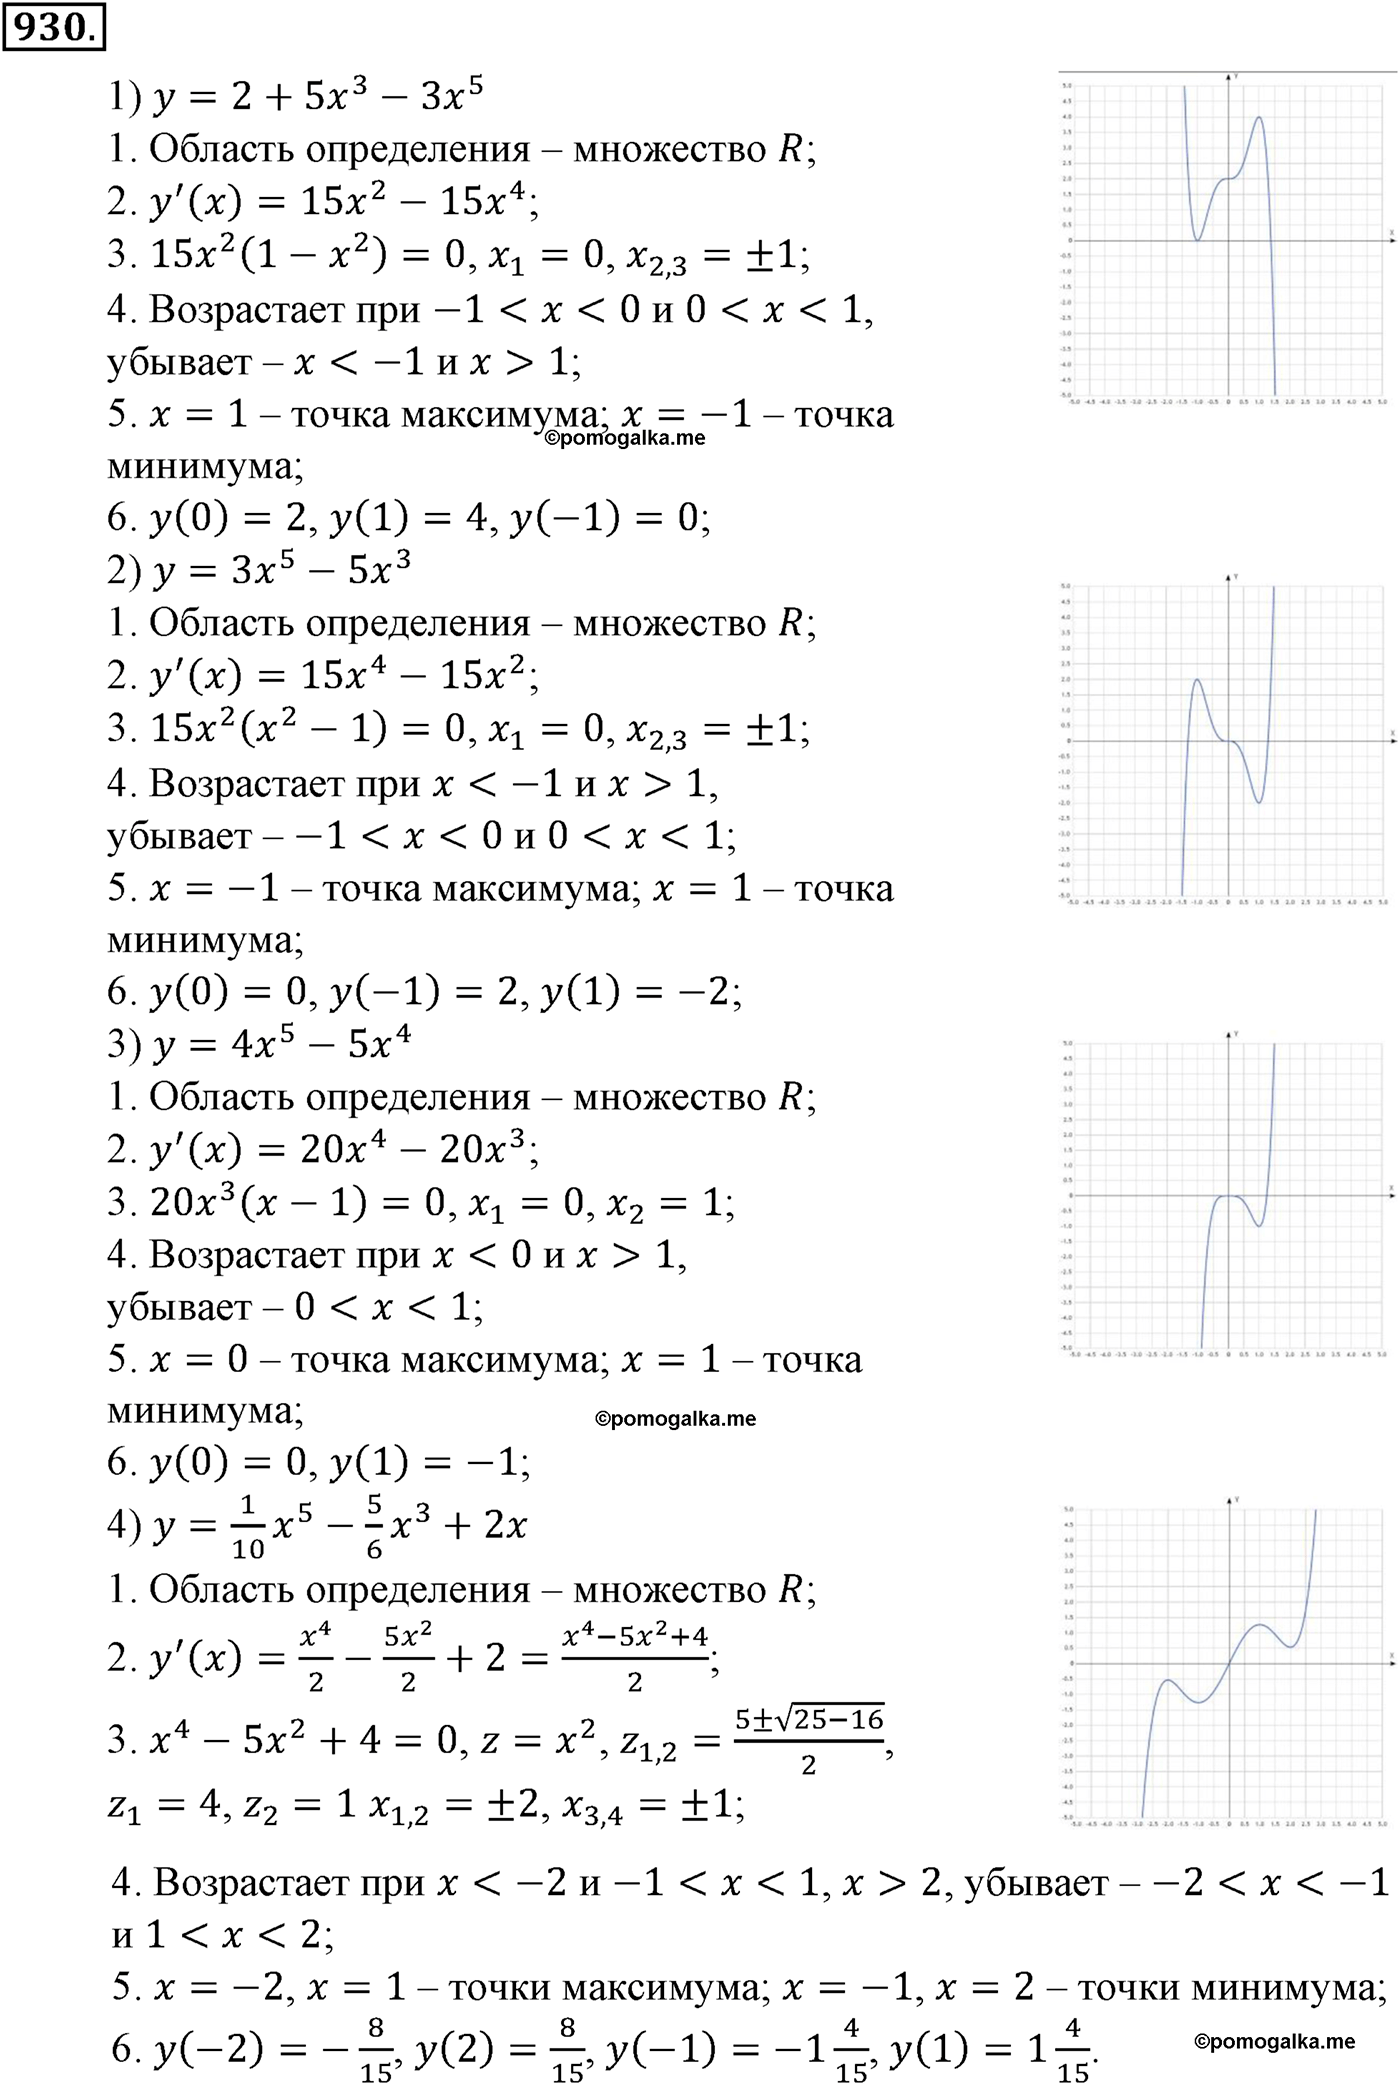 разбор задачи №930 по алгебре за 10-11 класс из учебника Алимова, Колягина